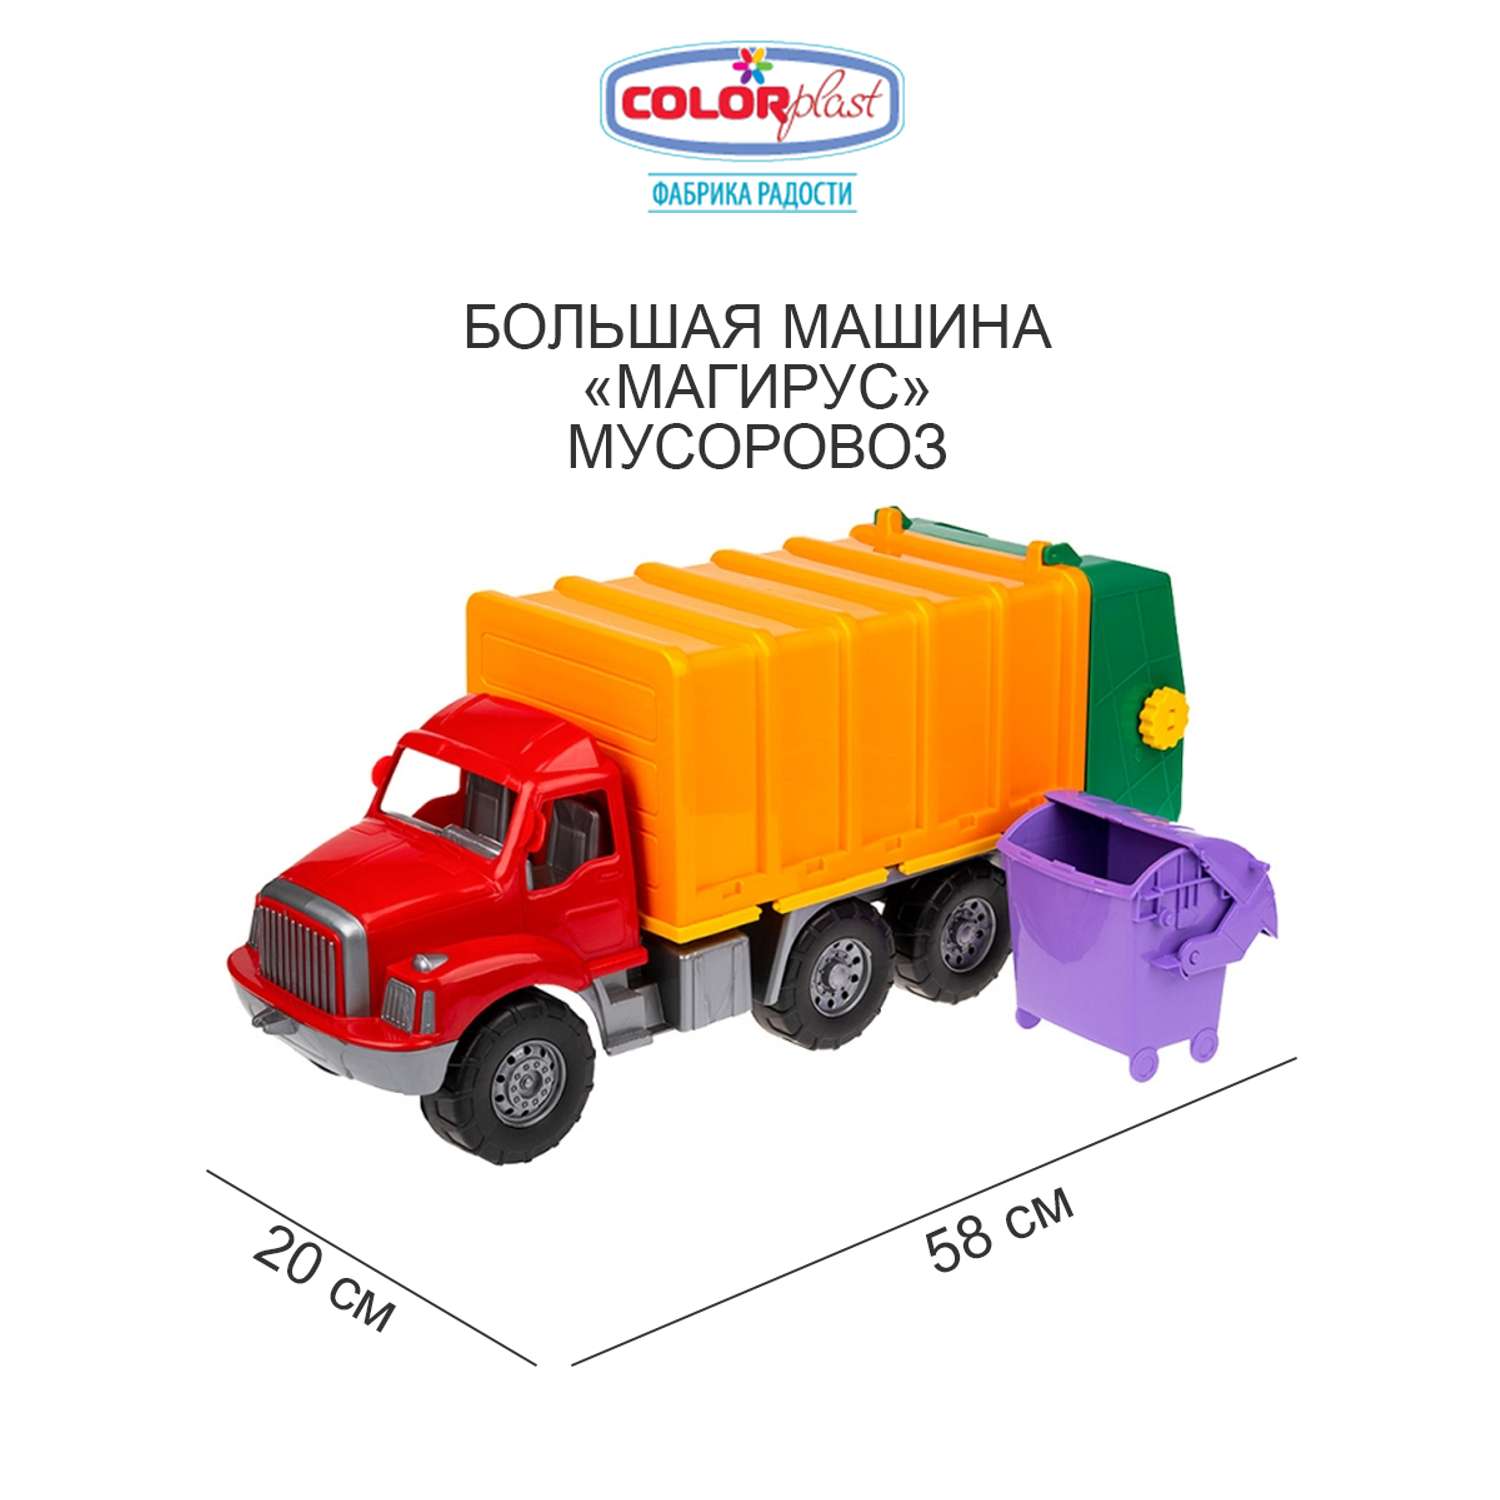 Большая машина Colorplast Магирус мусоровоз с контейнером красная 58 см - фото 1